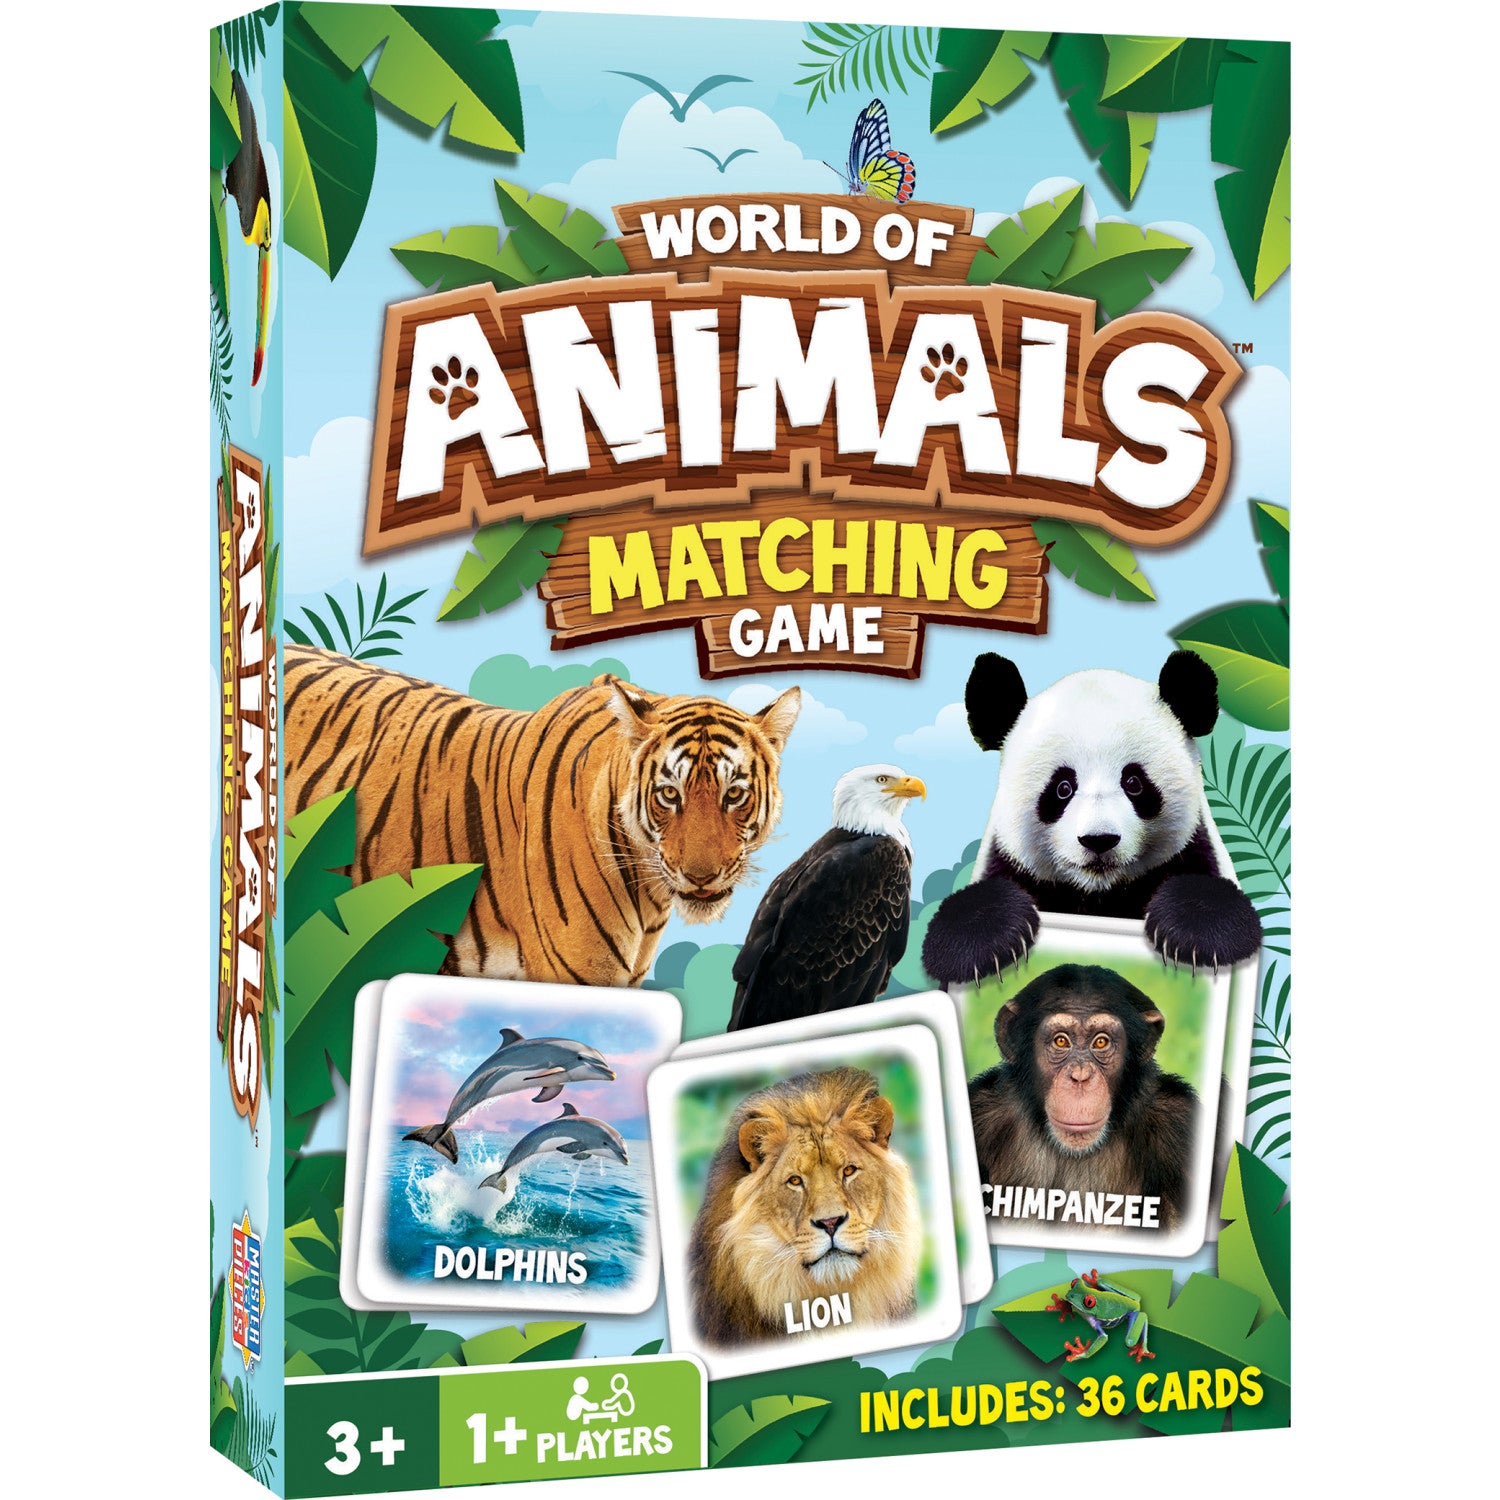 World of Animals Matching Game